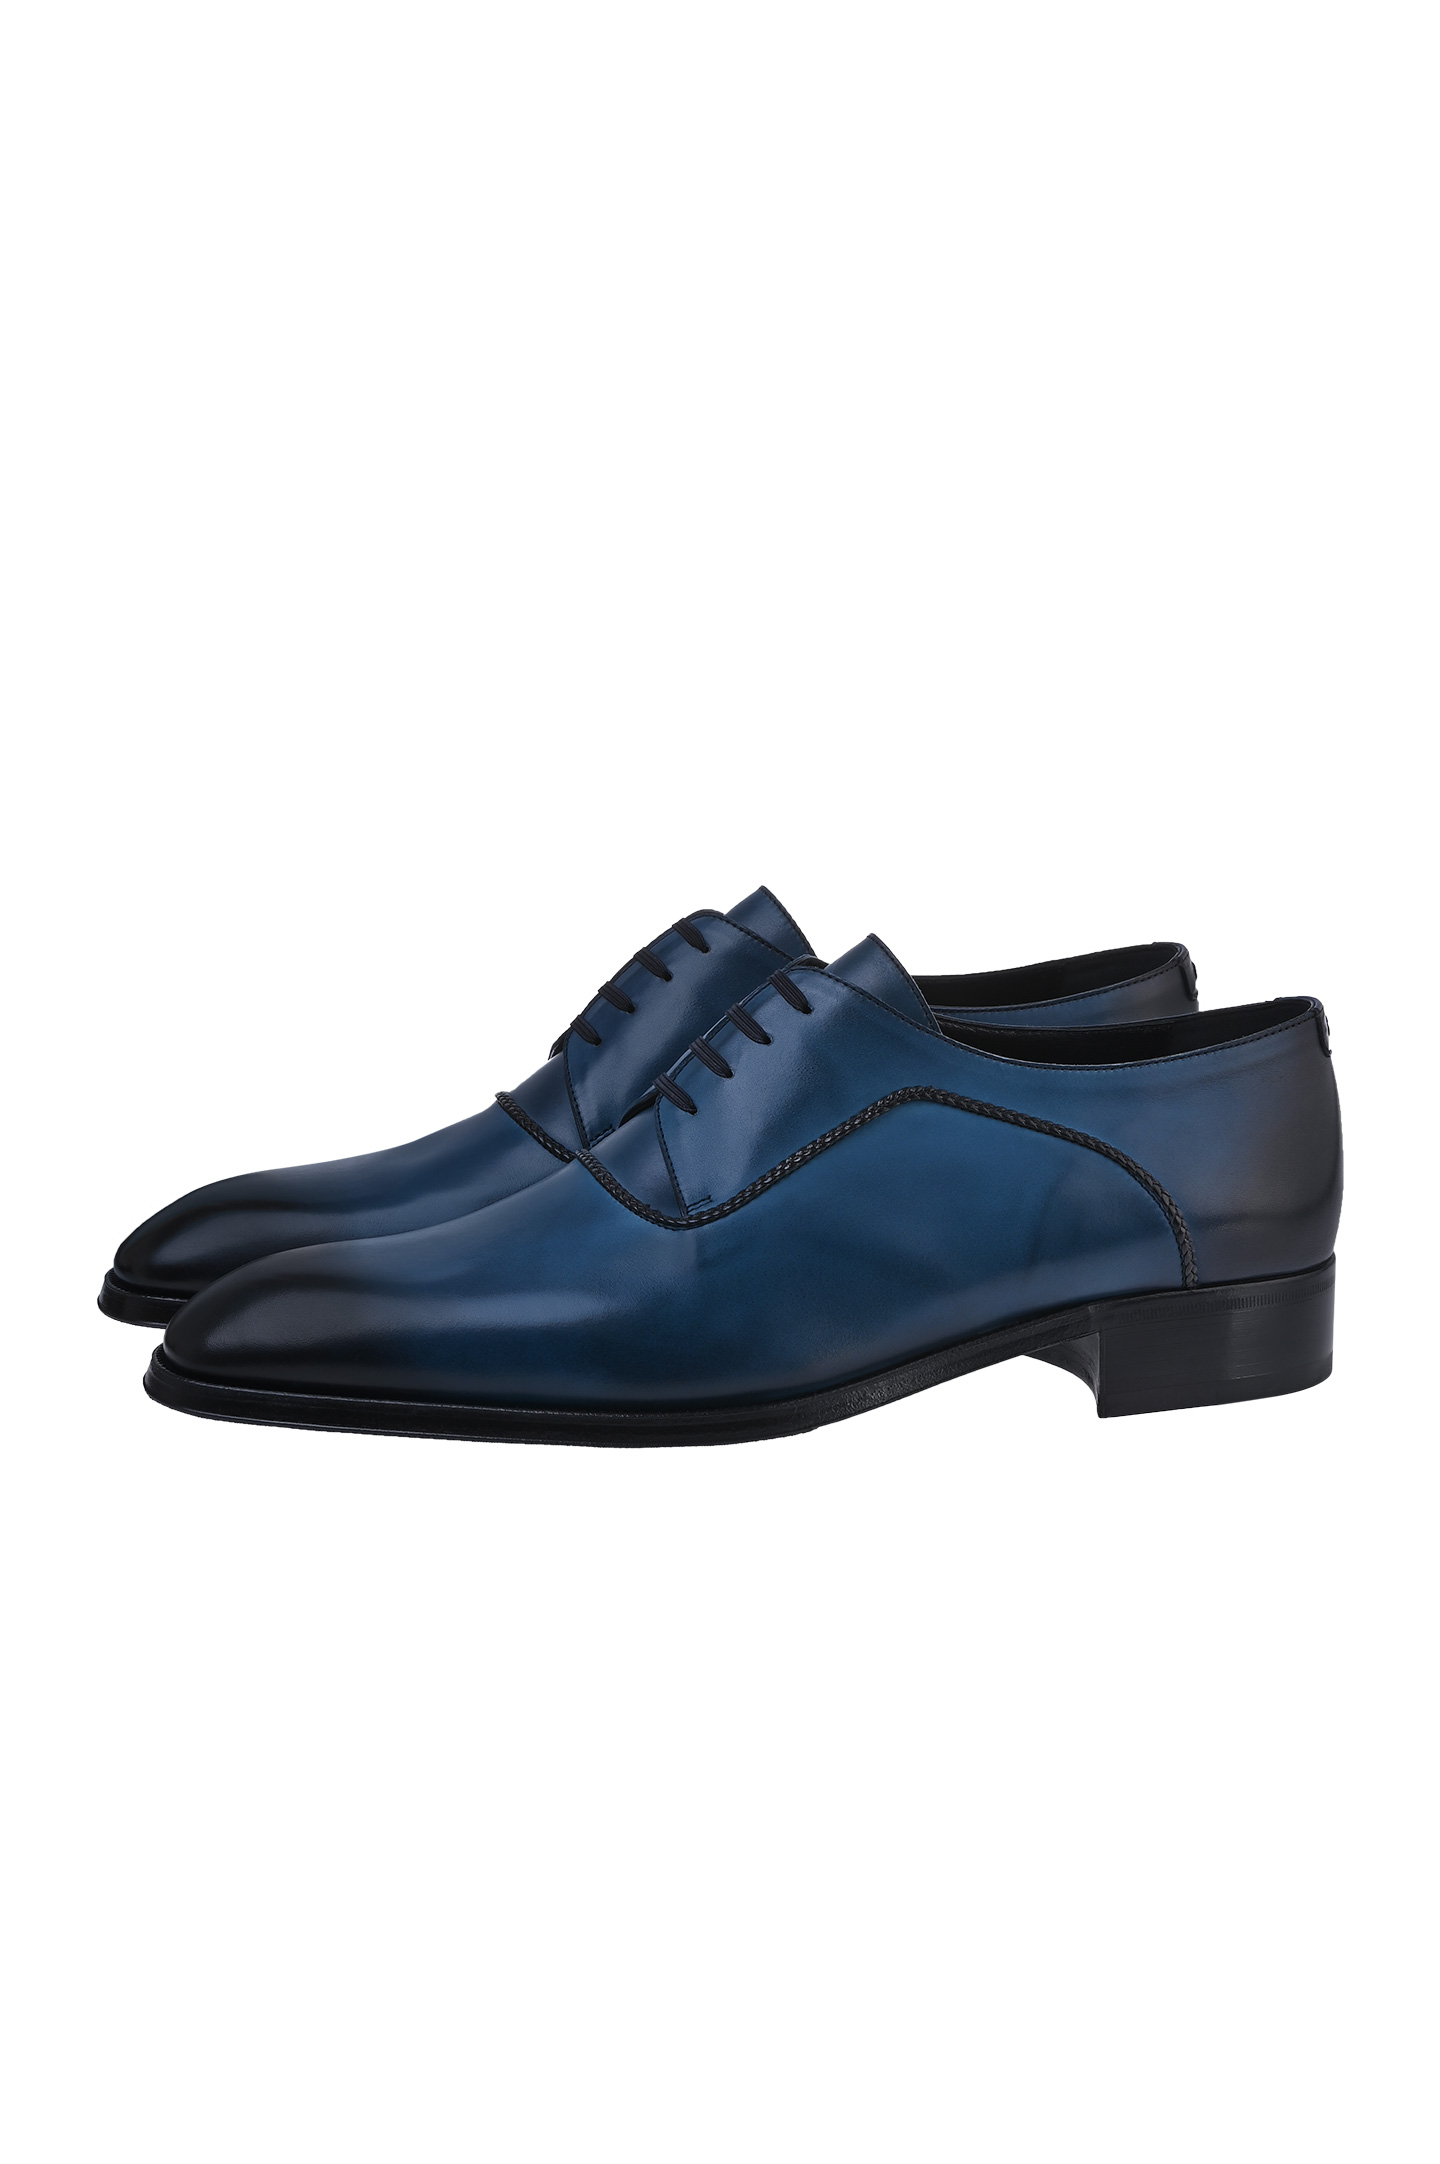 Туфли ARTIOLI 0G6S396/BIS, цвет: Синий, Мужской